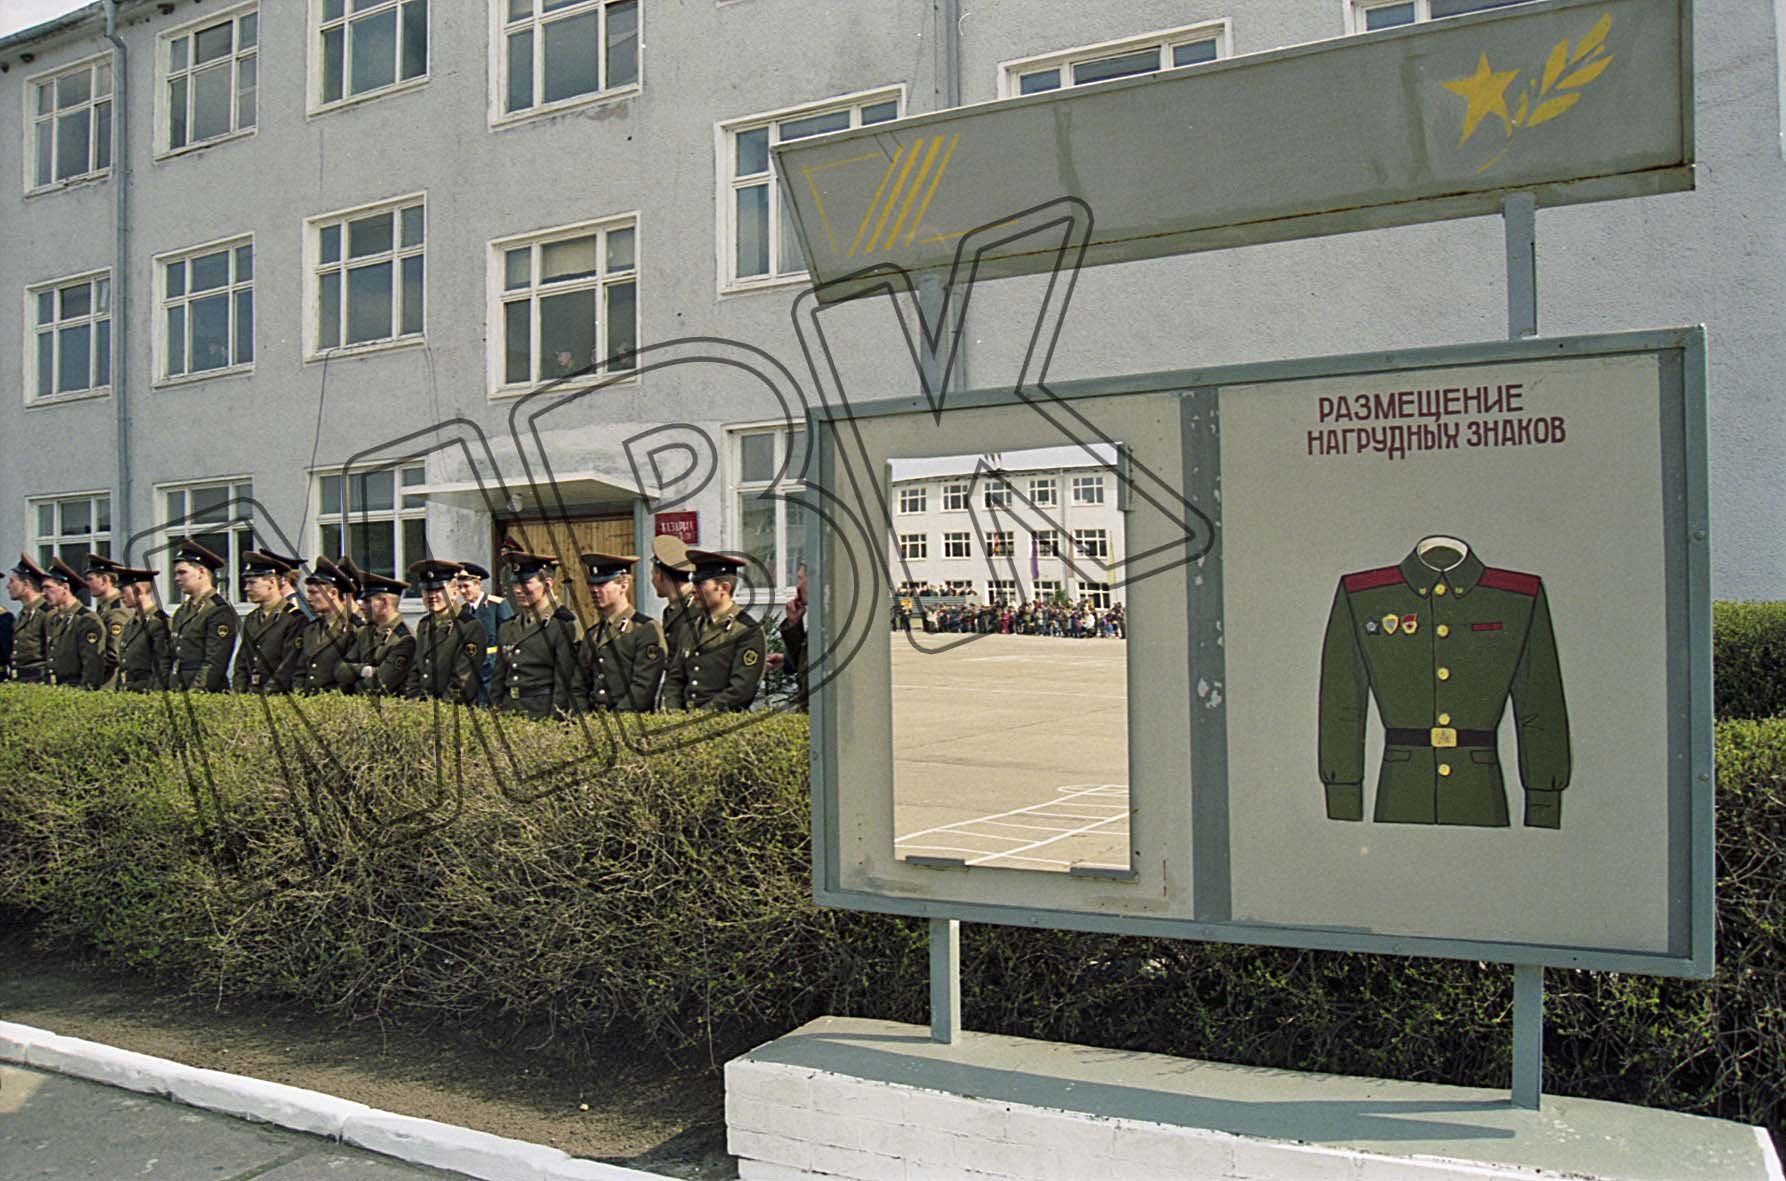 Tafel zur Instruktion des korrekten Anlegens von Auszeichnungen in der Kaserne der 47. Garde-Panzerdivision, Mahlwinkel, 1994 (Museum Berlin-Karlshorst RR-P)